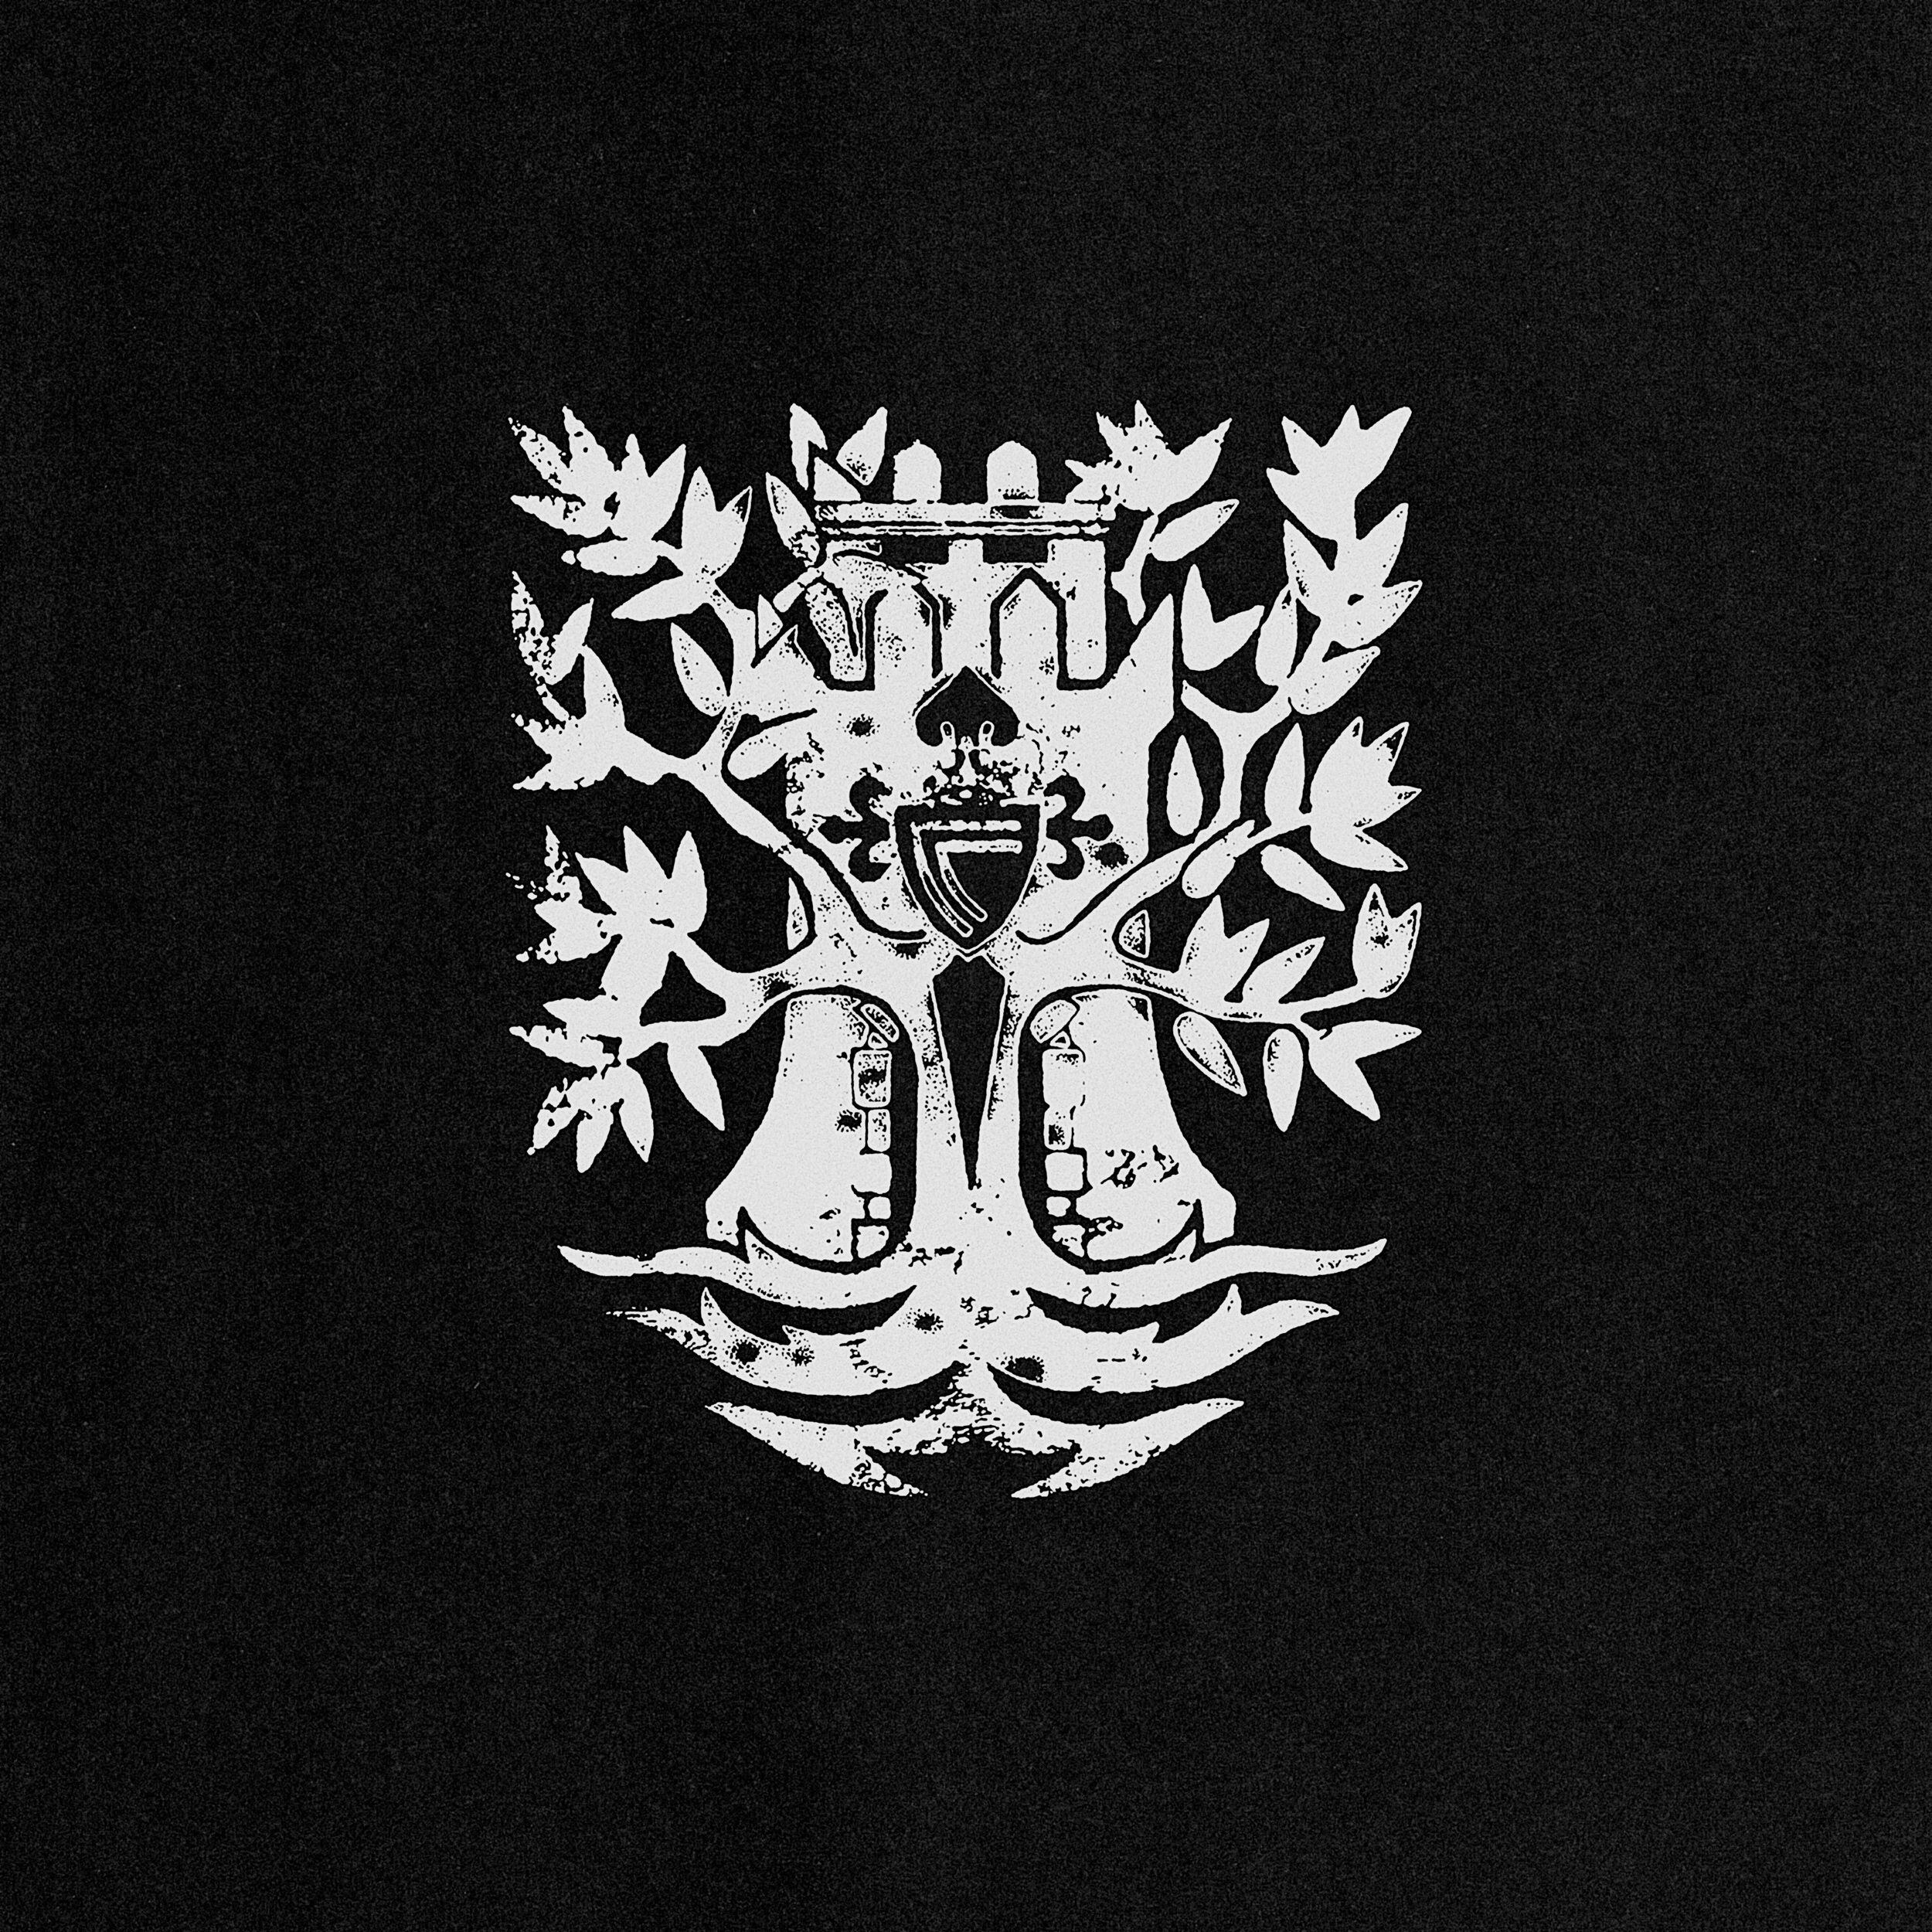 El escudo de C. Tangana para el himno del RC Celta de Vigo combina el emblema del equipo con ramas de olivo, símbolo de la ciudad gallega.